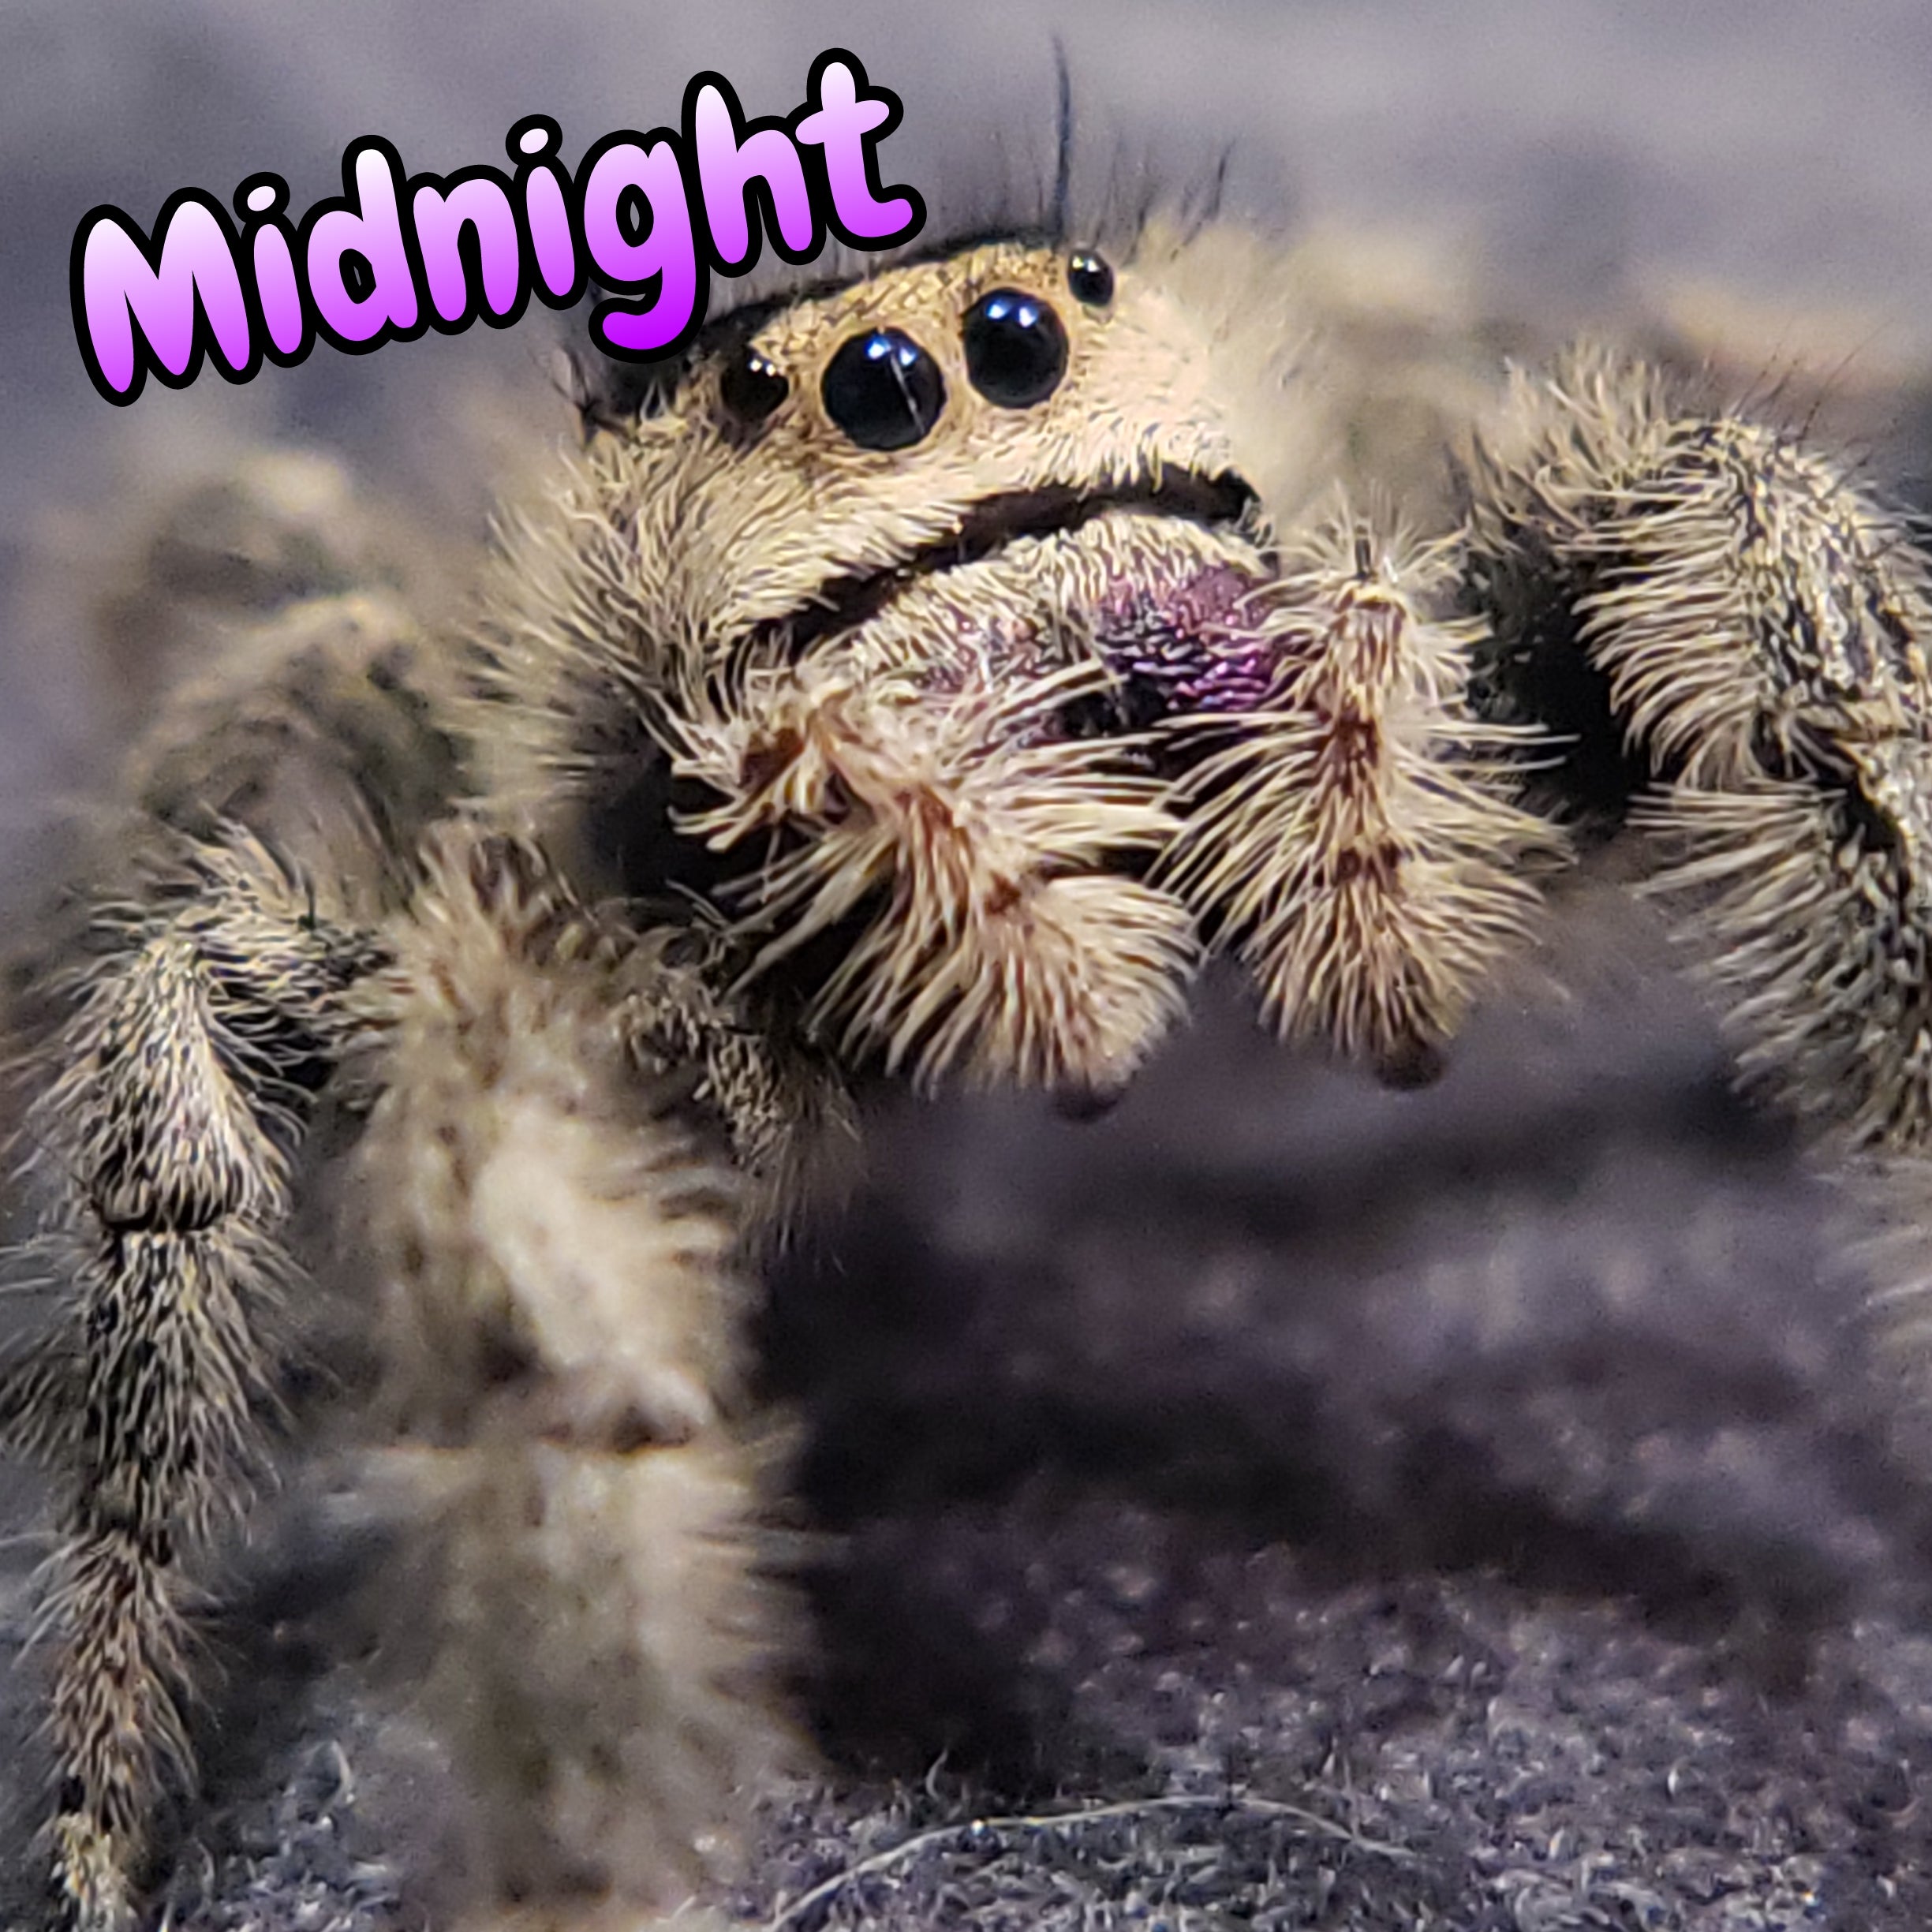 Regal Jumping Spider "Midnight"